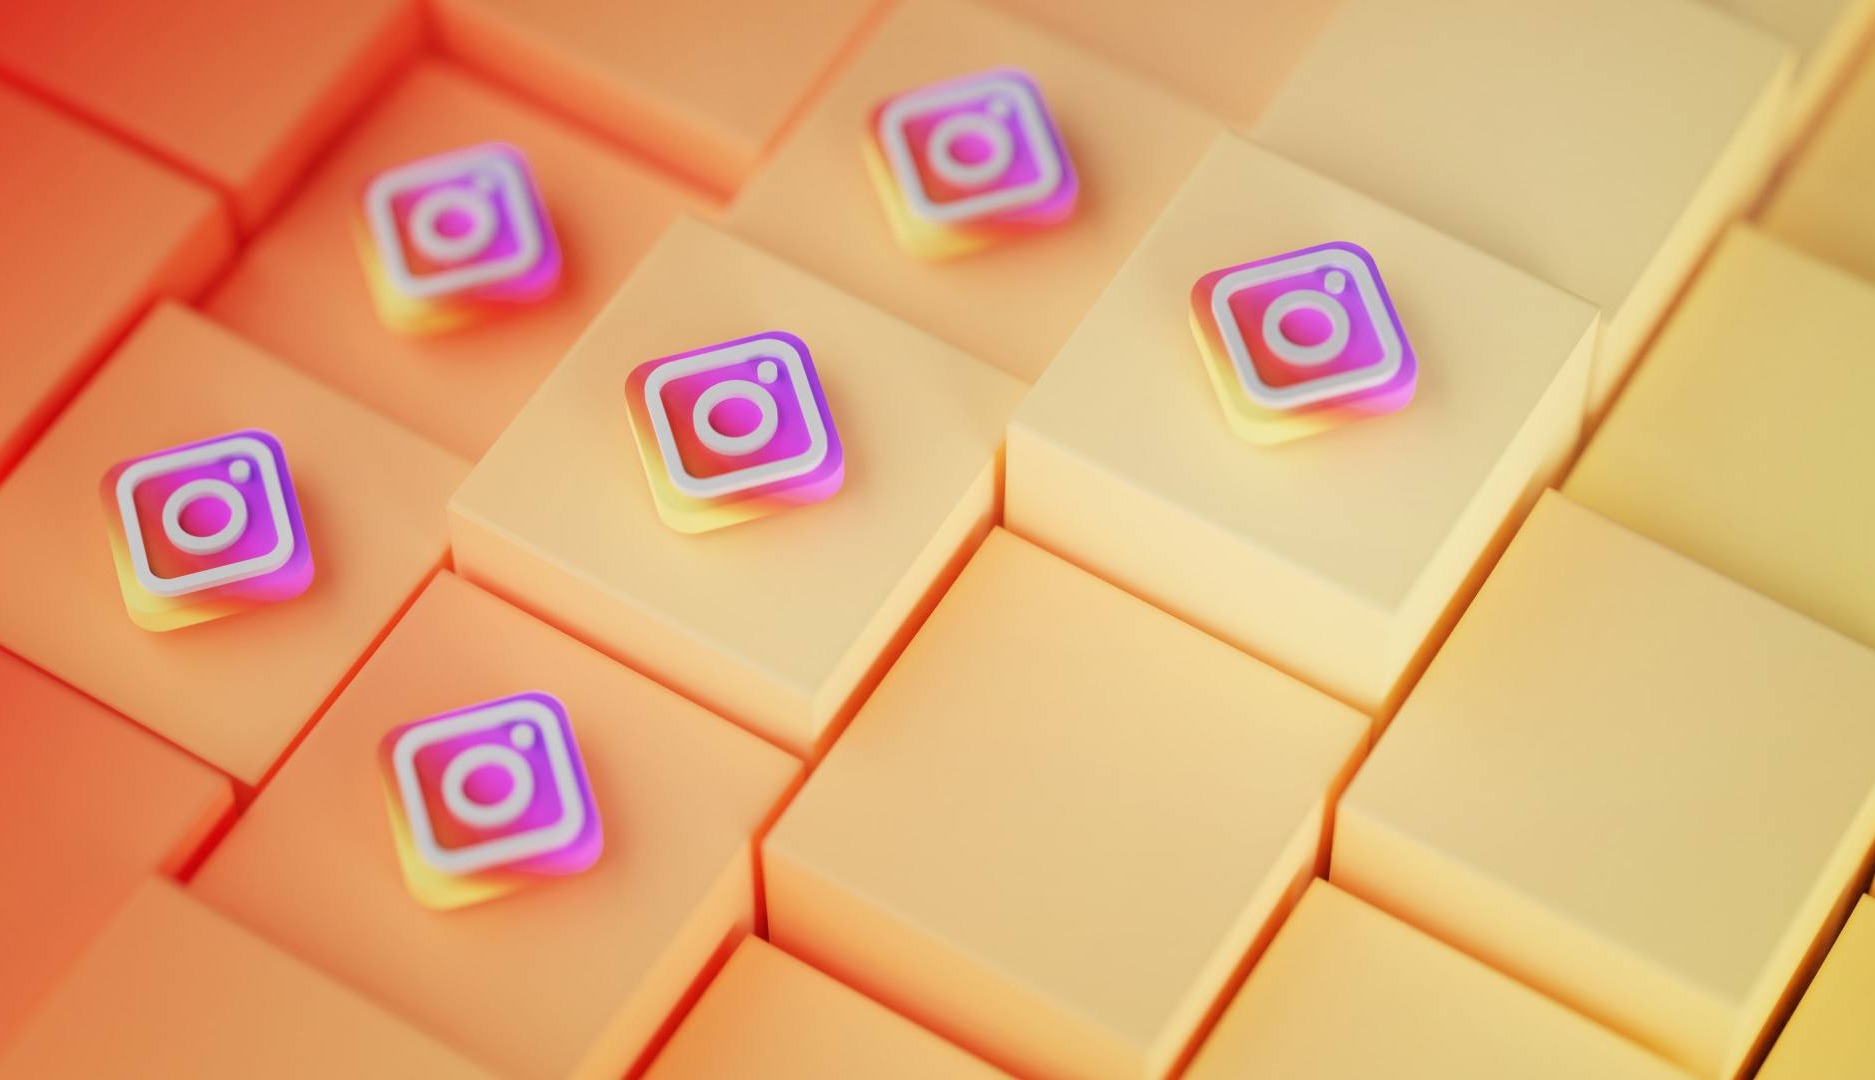 Logotipo Instagram a modo de fichas